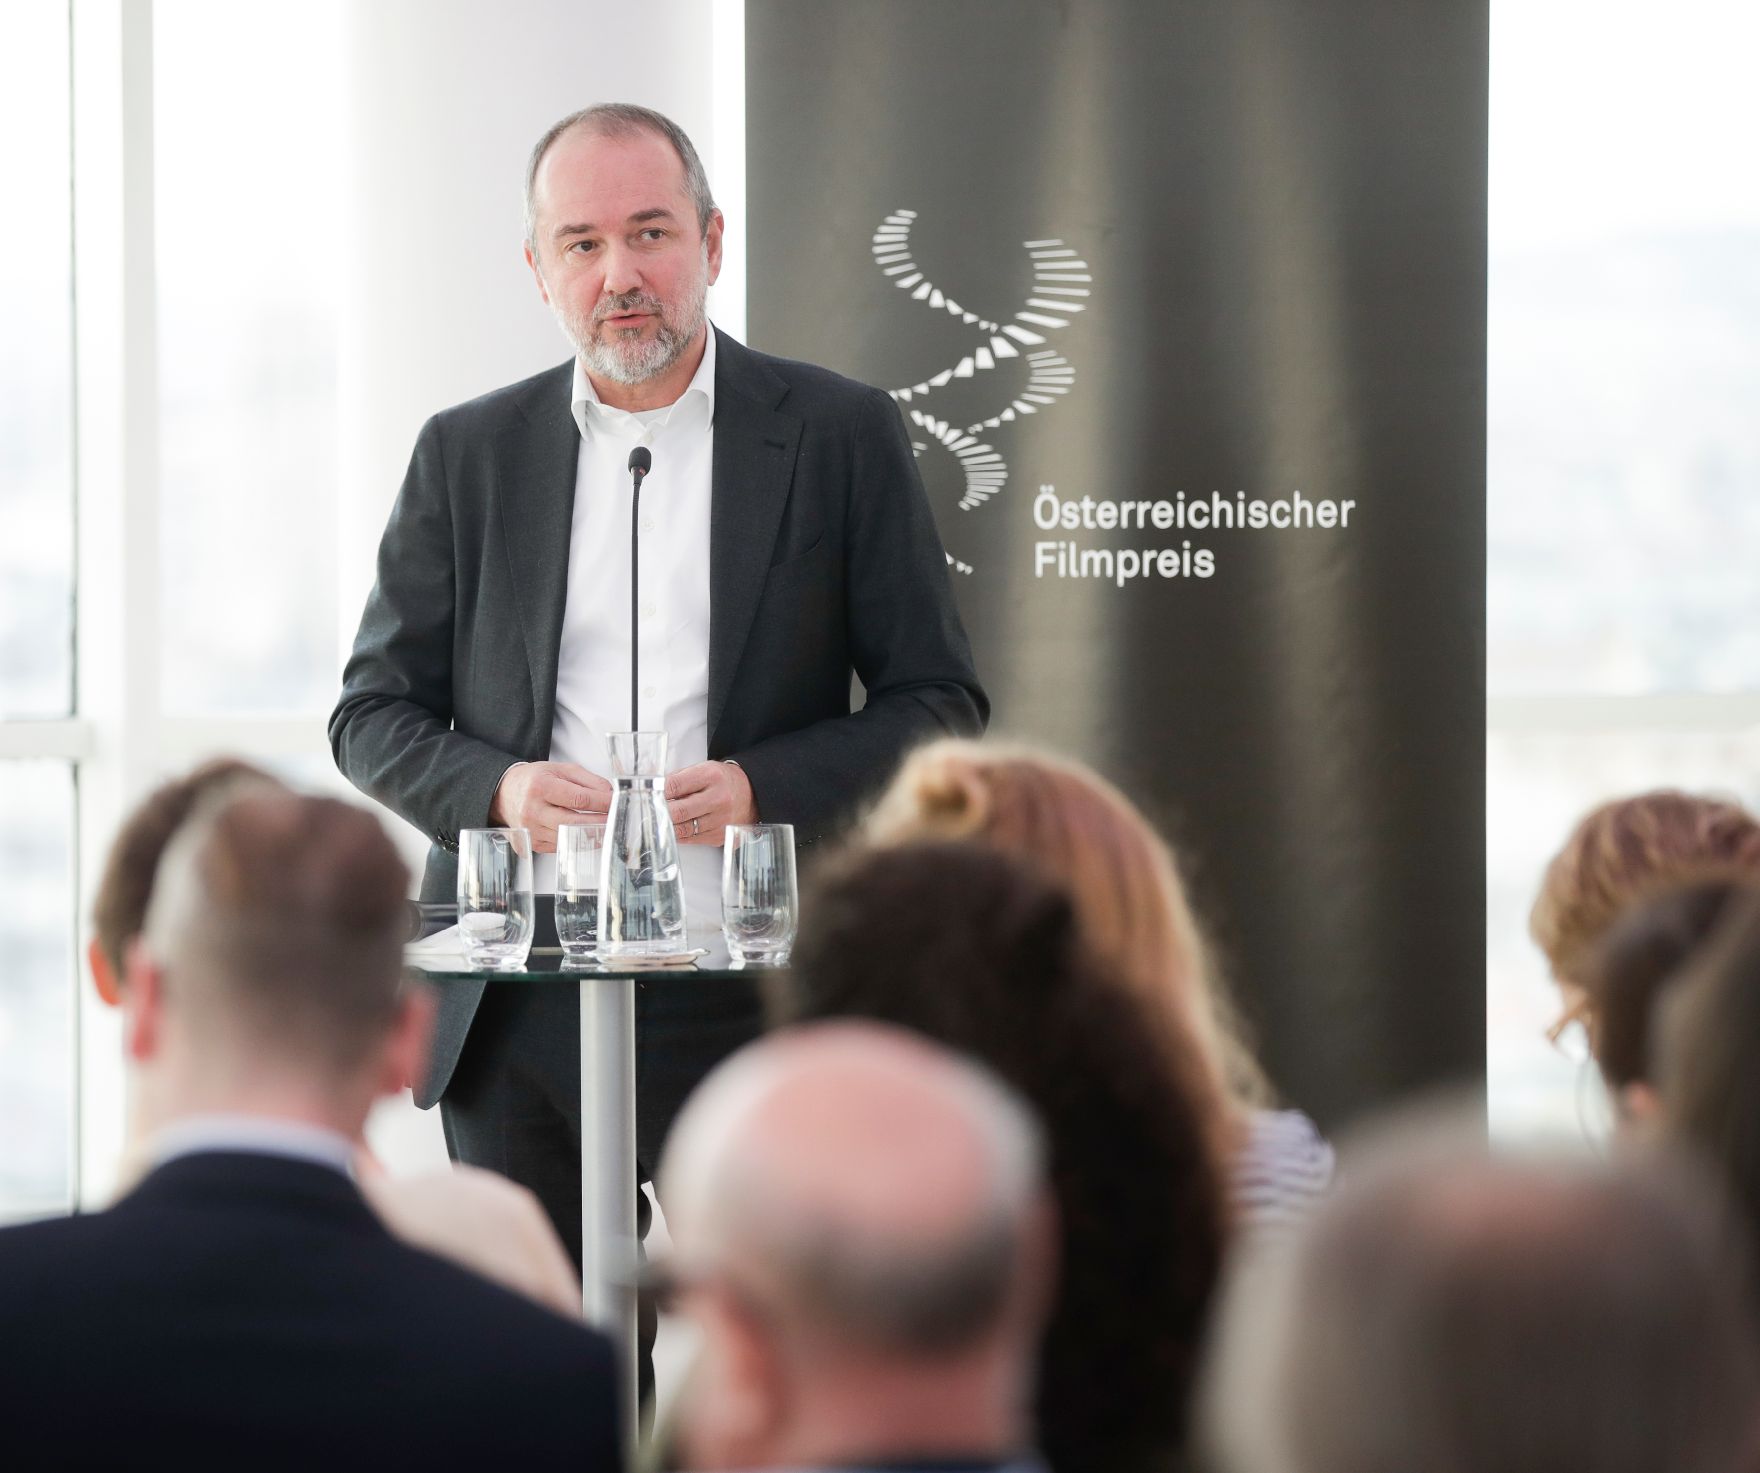 Am 6. Dezember 2017 fand im Ringturm eine Pressekonferenz zur Bekanntgabe der Nominierung des Österreichischen Filmpreises 2018 statt. Im Bild Kunst- und Kulturminister Thomas Drozda.